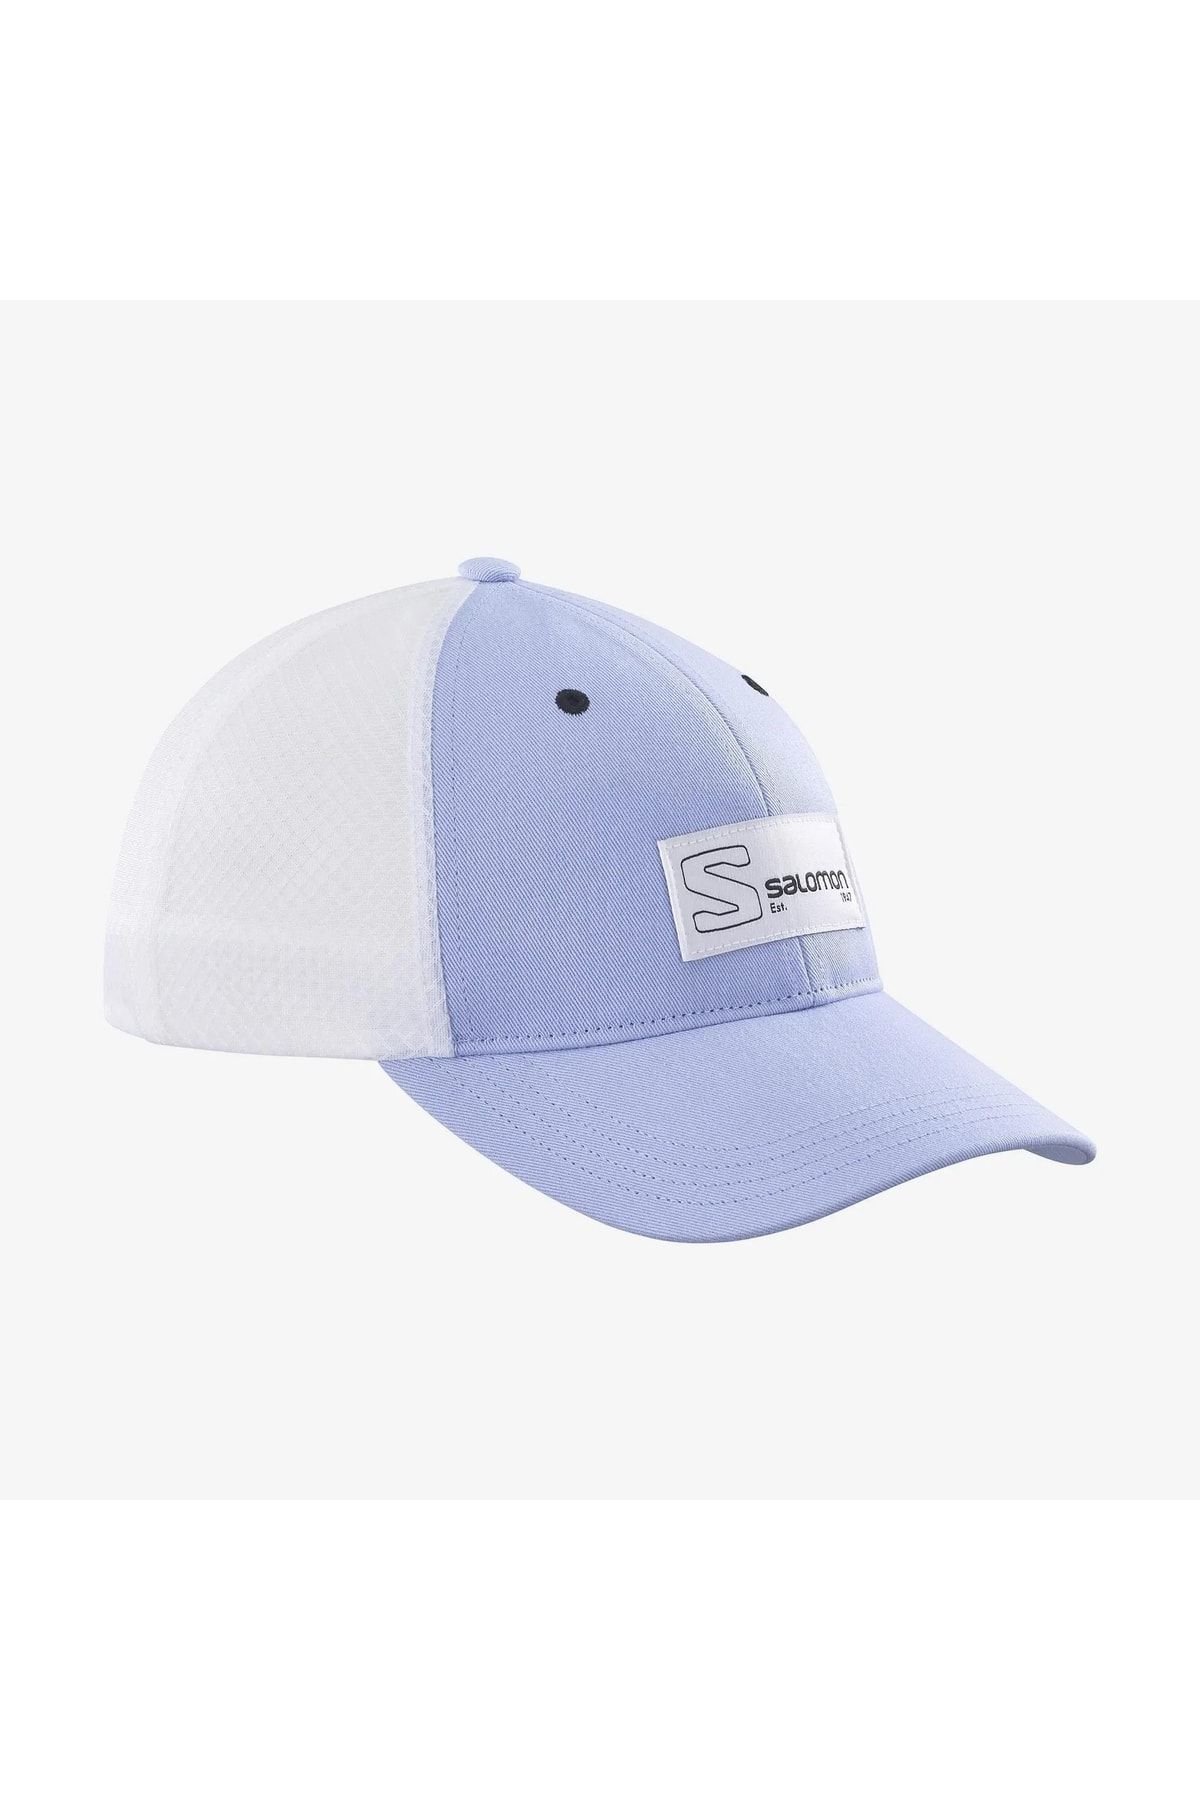 Salomon Trucker Curved Cap Unisex Beyaz Şapka Lc1681700-27037